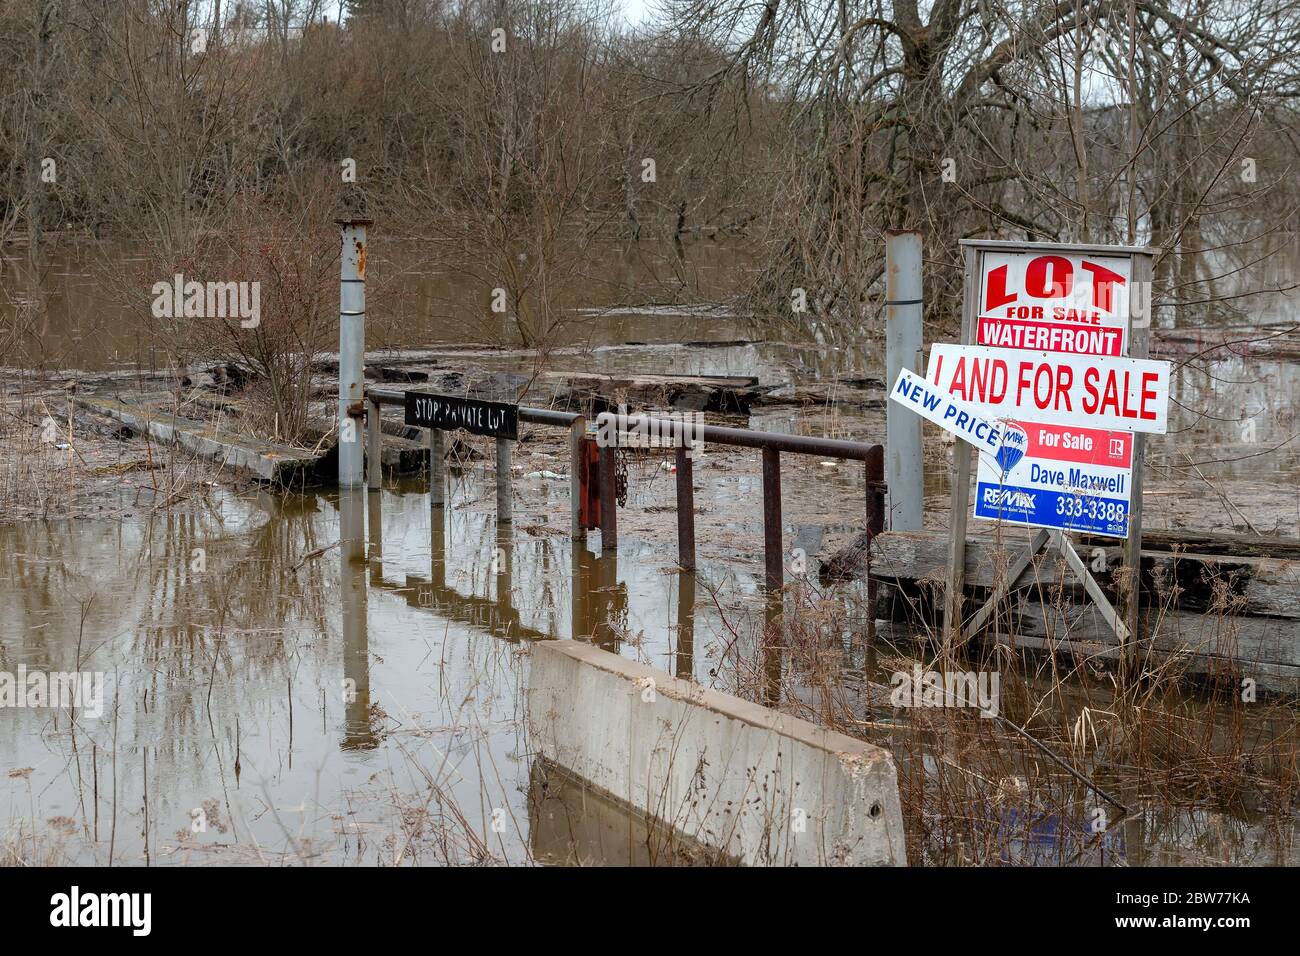 Saint John, Nouveau-Brunswick, Canada - 26 avril 2019 : terres inondées à vendre. Un panneau sur le terrain indique « TERRAIN À VENDRE » et NOUVEAU PRIX ». La terre est principalement Banque D'Images